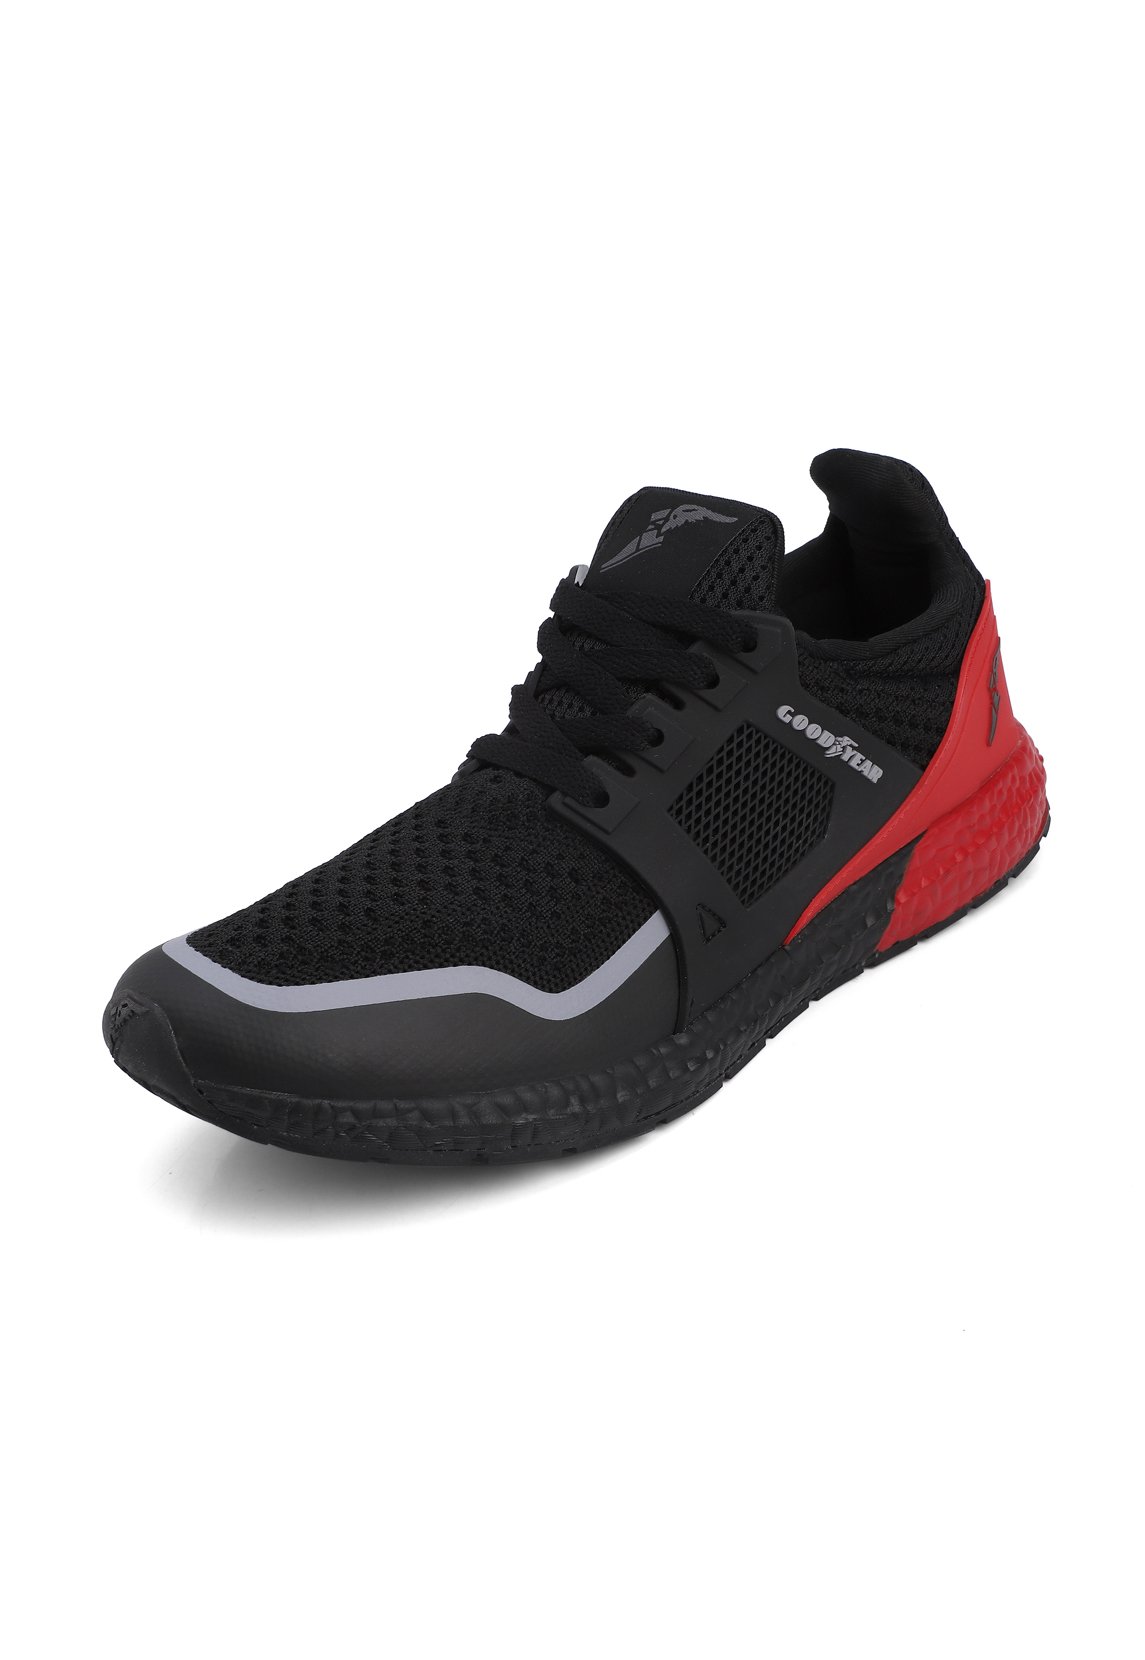 Educación moral suficiente Incorrecto Tenis Goodyear Negro/Rojo DETROIT-L - Goodyear Footwear Colombia